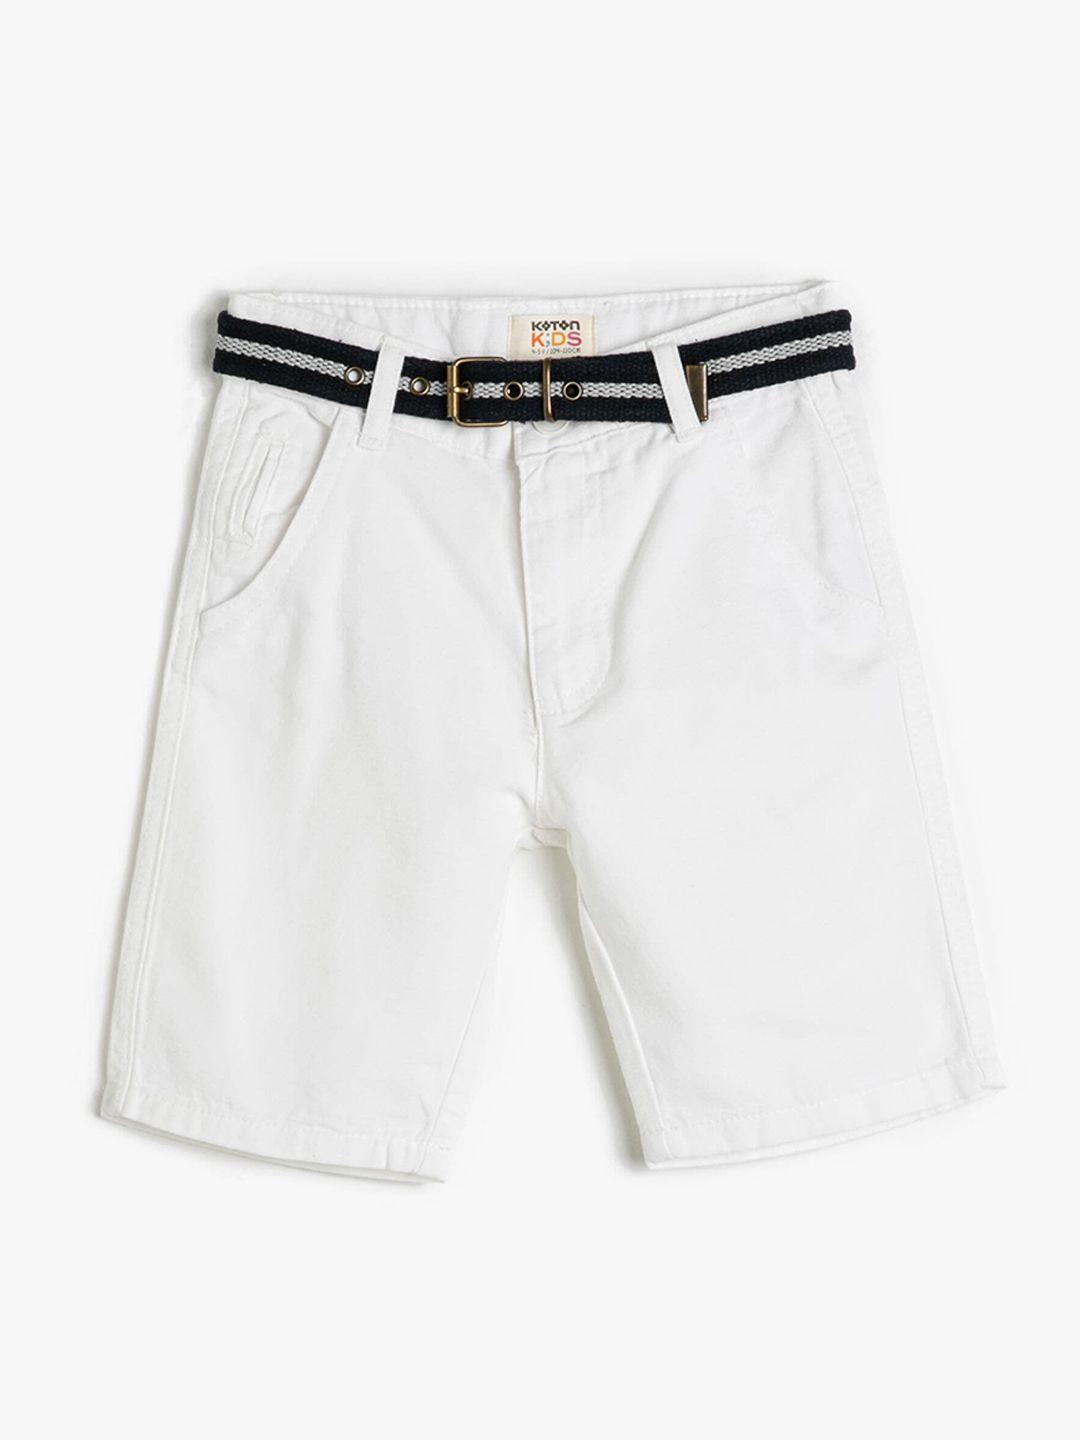 koton boys mid-rise pure cotton shorts